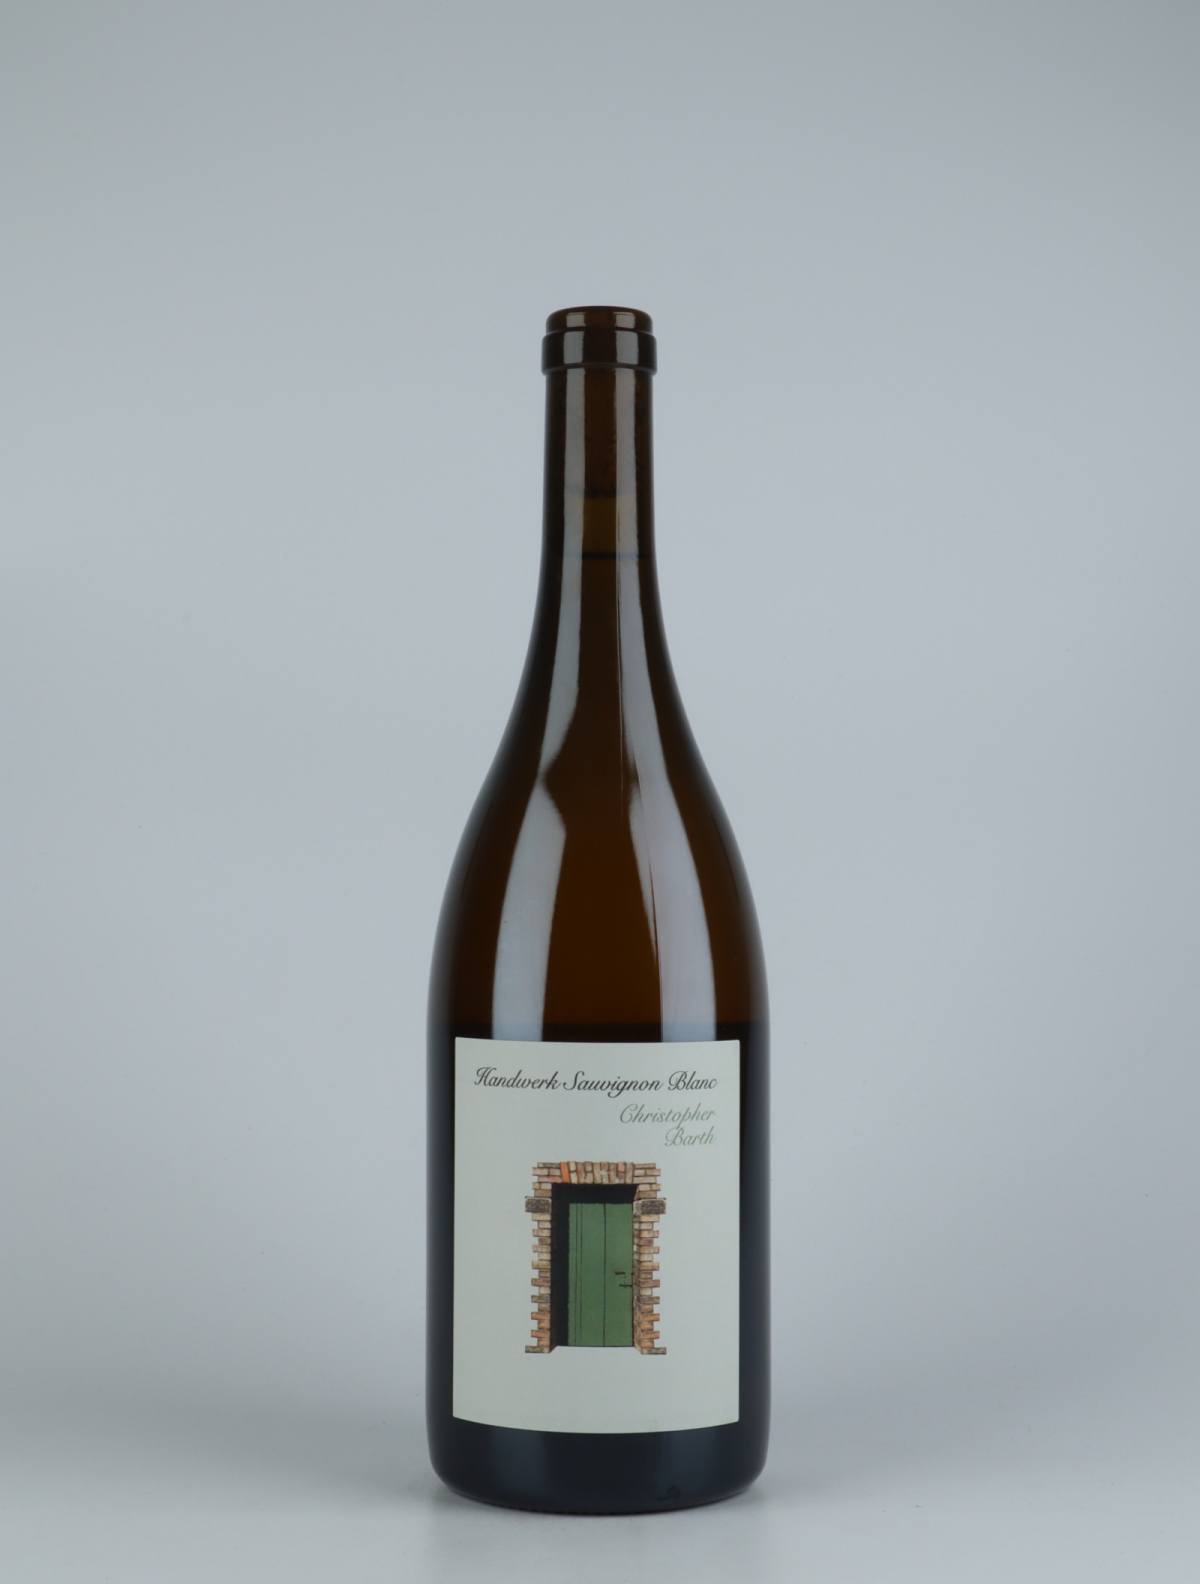 A bottle 2019 Handwerk Sauvignon Blanc White wine from Christopher Barth, Rheinhessen in Germany